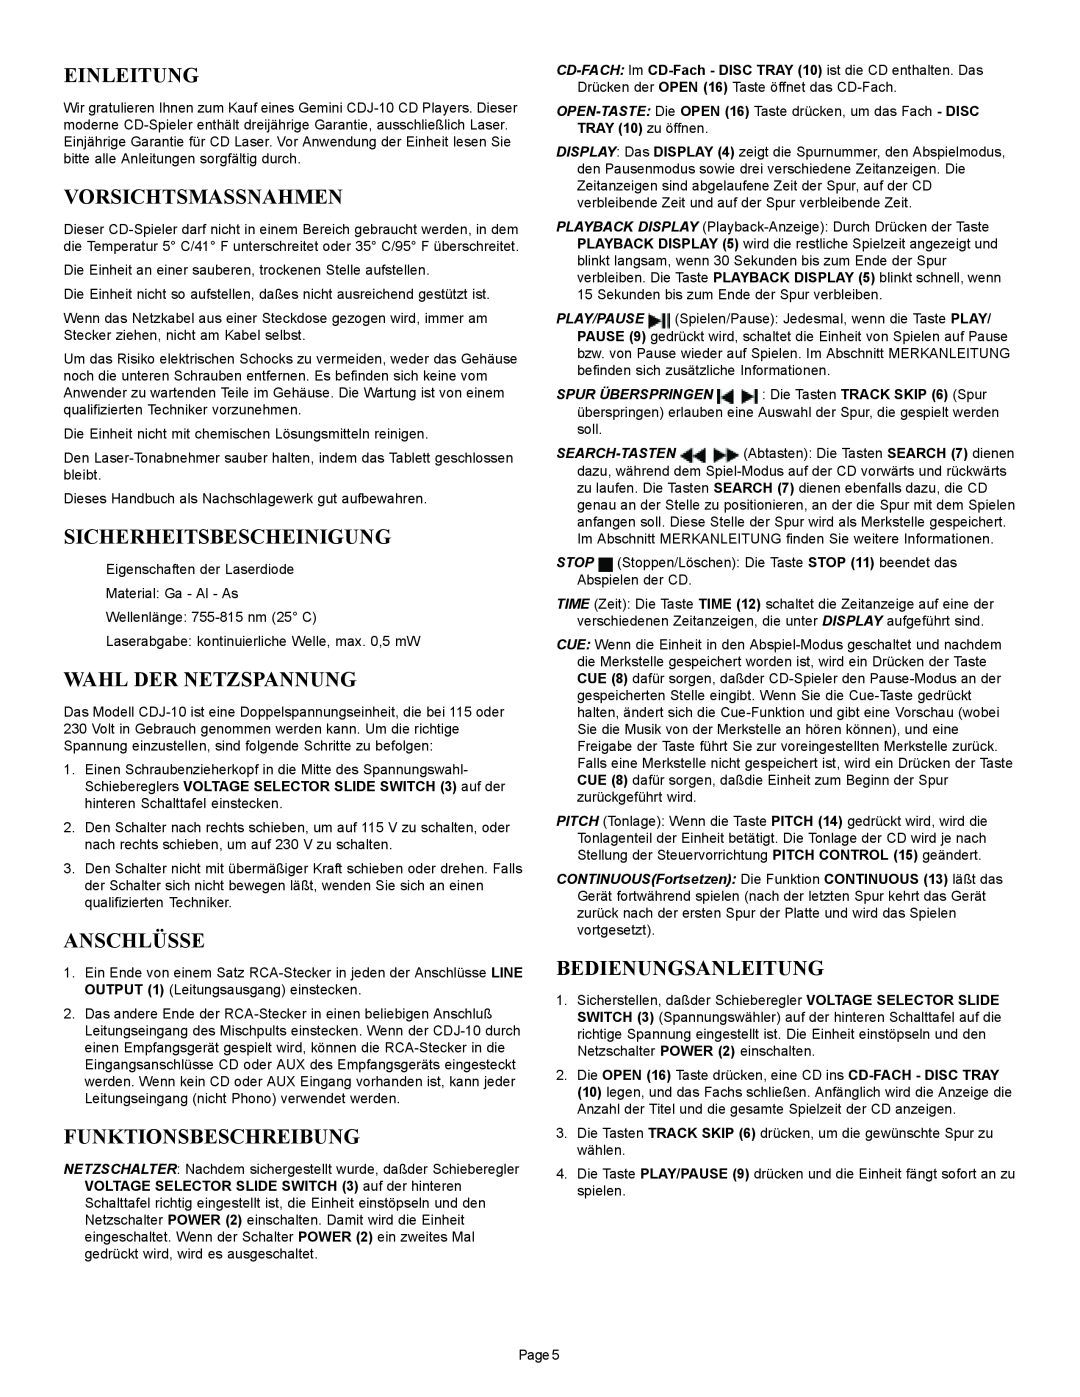 Gemini CDJ-10 manual Einleitung, Vorsichtsmassnahmen, Sicherheitsbescheinigung, Wahl Der Netzspannung, Anschlüsse 